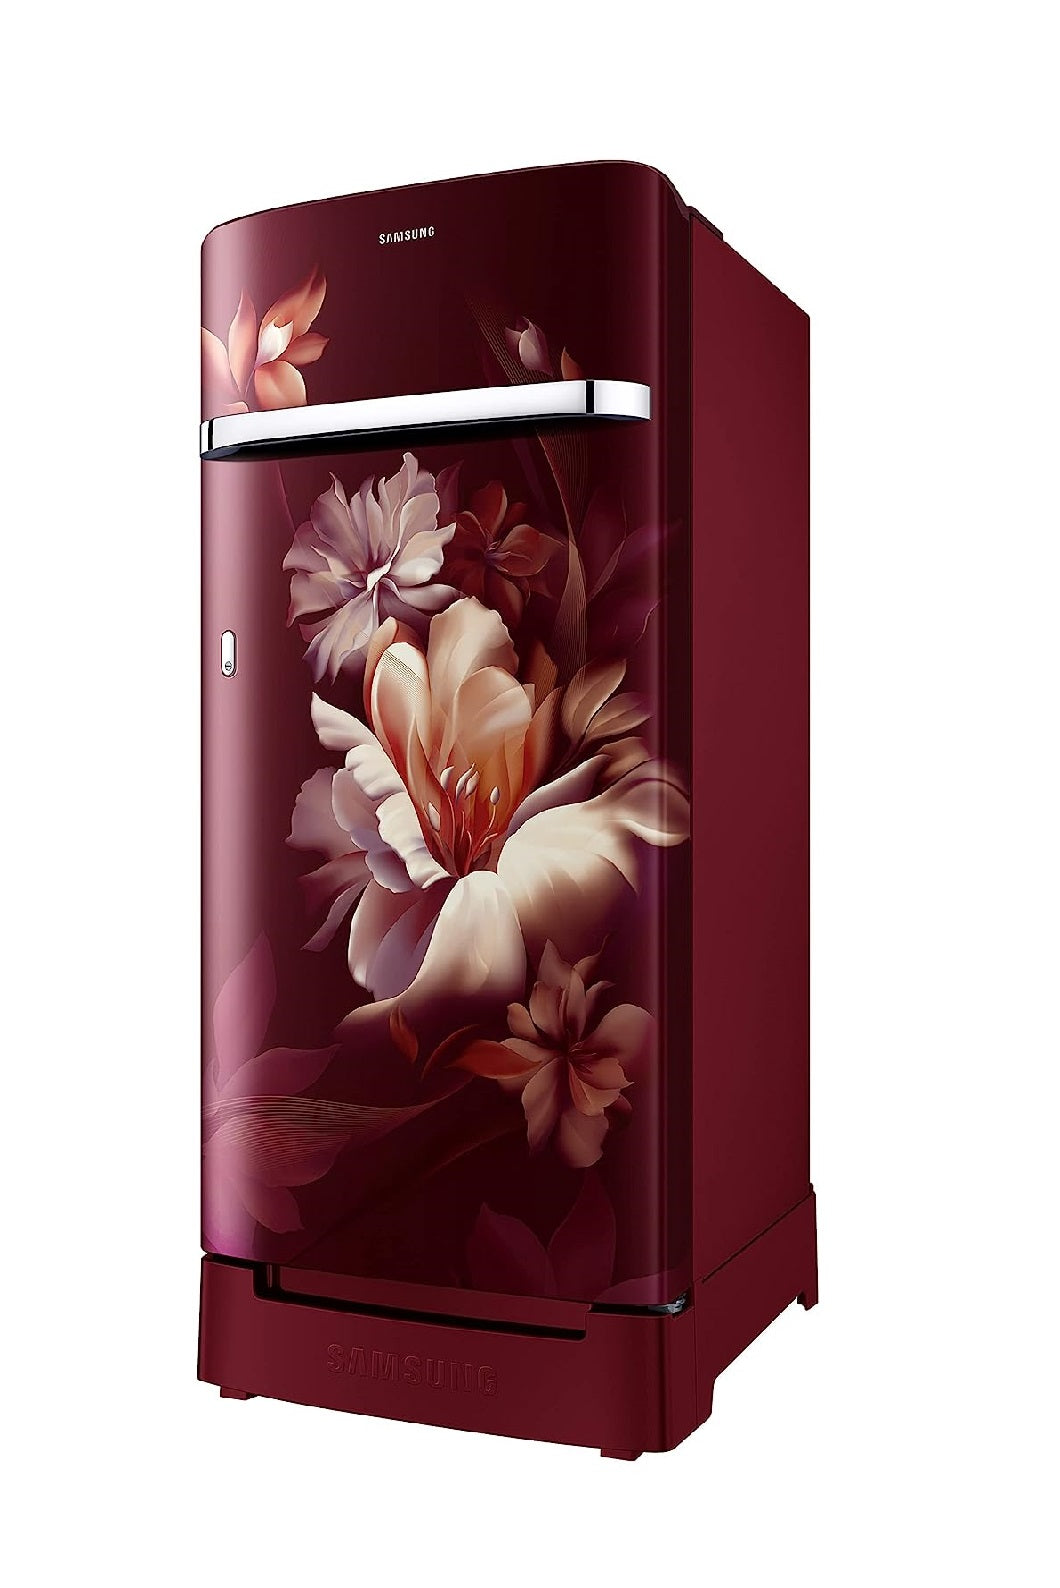 Samsung RR21C2H25RZ/HL 189L 5 Star Inverter Direct-Cool Single Door Refrigerator, Midnight Blossom Red